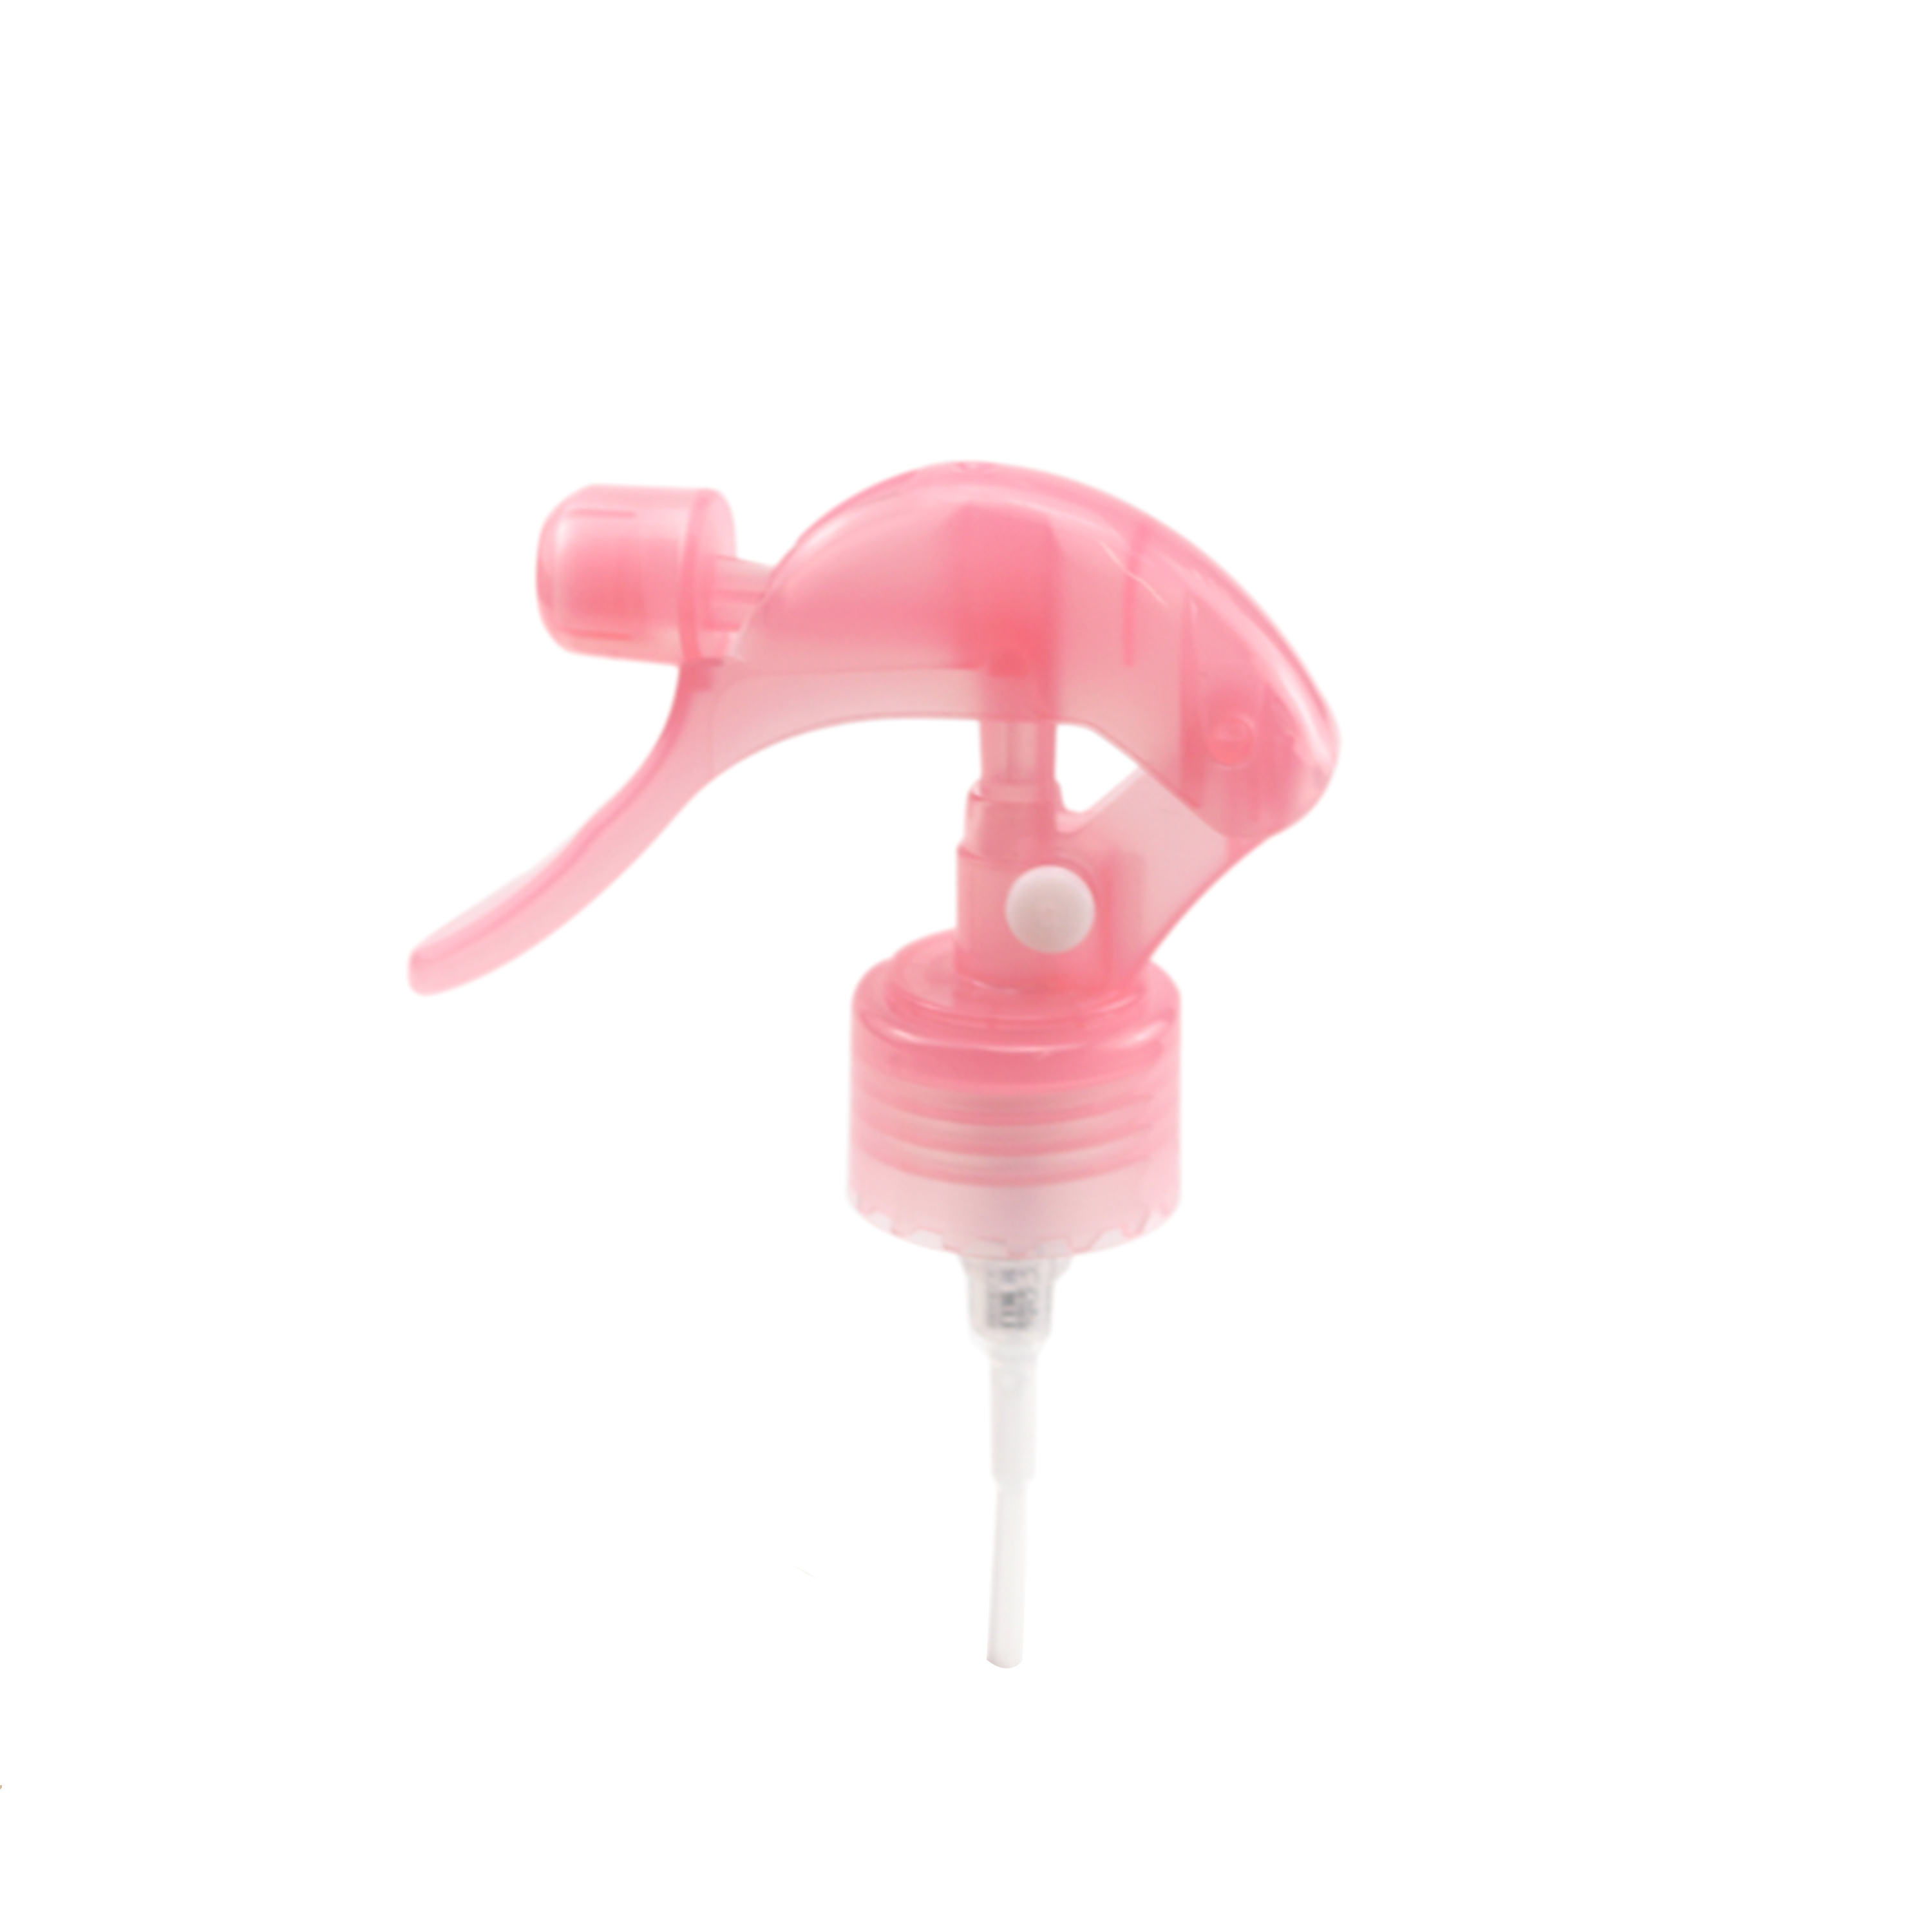 Plastic Mini Trigger Spray Pump 20/410 24/410 28/410 ezigbo alụlụ ịgba egbe karama ude mmiri mmiri na-akpalite sprayer